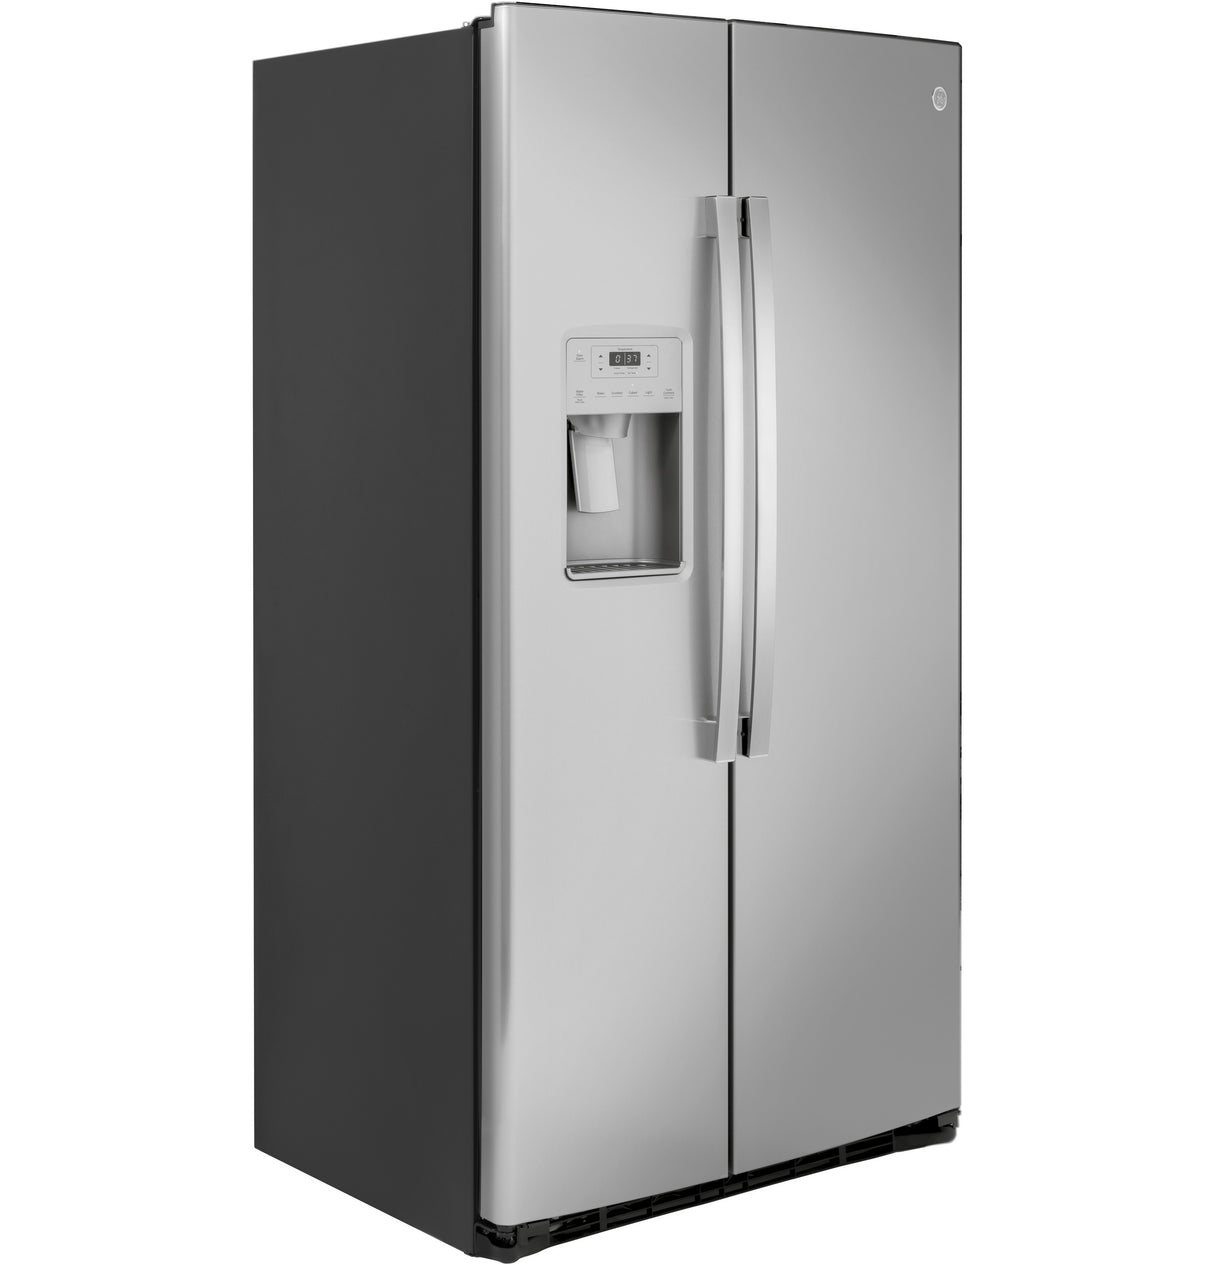 GE(R) 21.8 Cu. Ft. Counter-Depth Fingerprint Resistant Side-By-Side Refrigerator - (GZS22IYNFS)